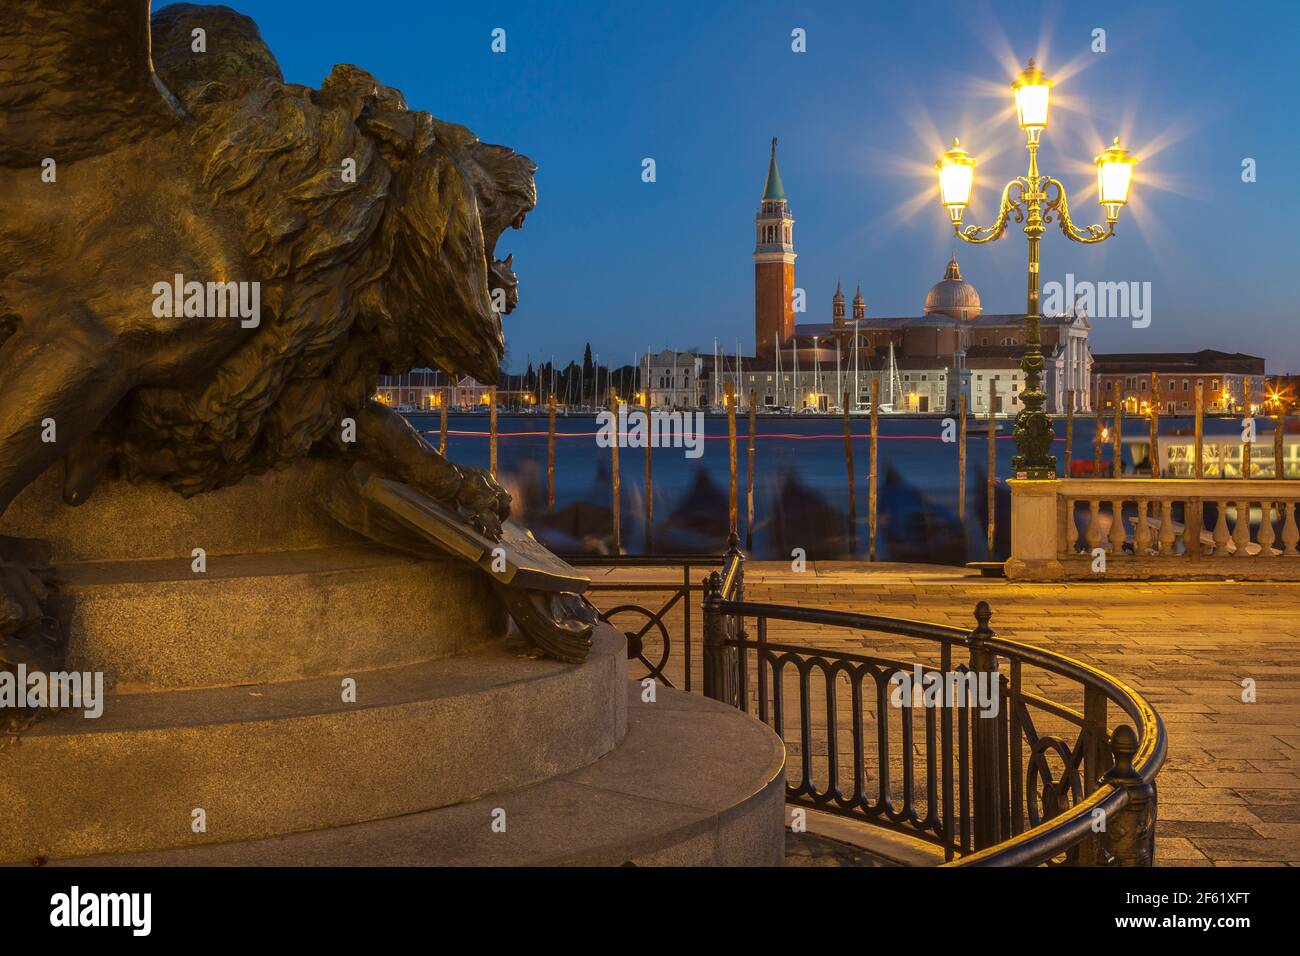 Lion vénitien de bronze surplombant San Giorgio Maggiore et Bacino San Marco sur la statue de Victor Emmanuel II, Castello, Venise, Italie, la nuit Banque D'Images